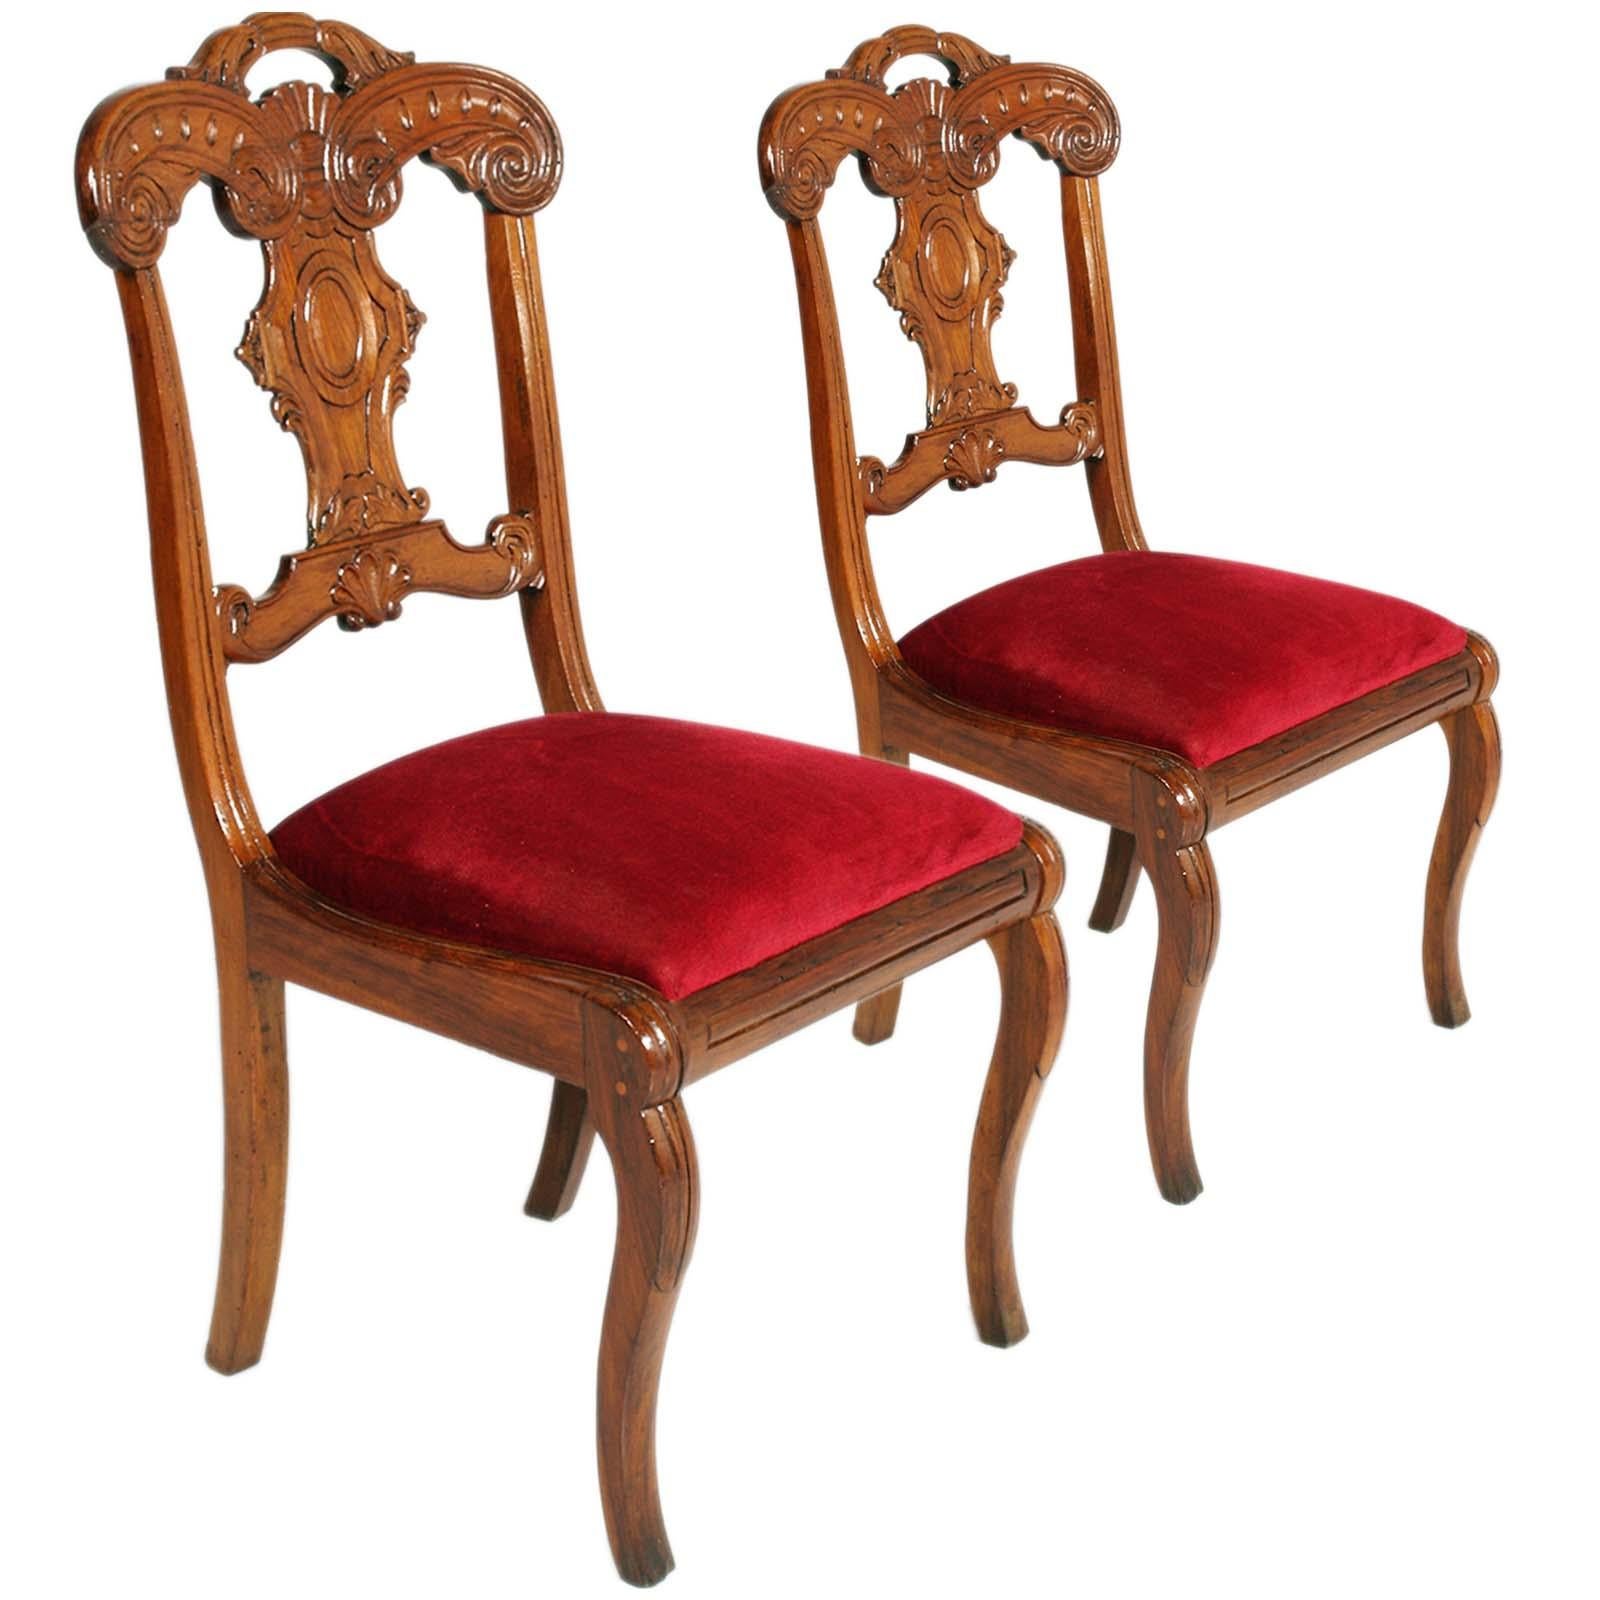 Exquise paire de chaises d'appoint françaises sculptées à la main du début du 18e siècle Charles X, en bois d'érable, récemment remeublées en velours rouge et cirées, ayant appartenu à une famille aristocratique vénitienne d'Asolo.

Le style Charles